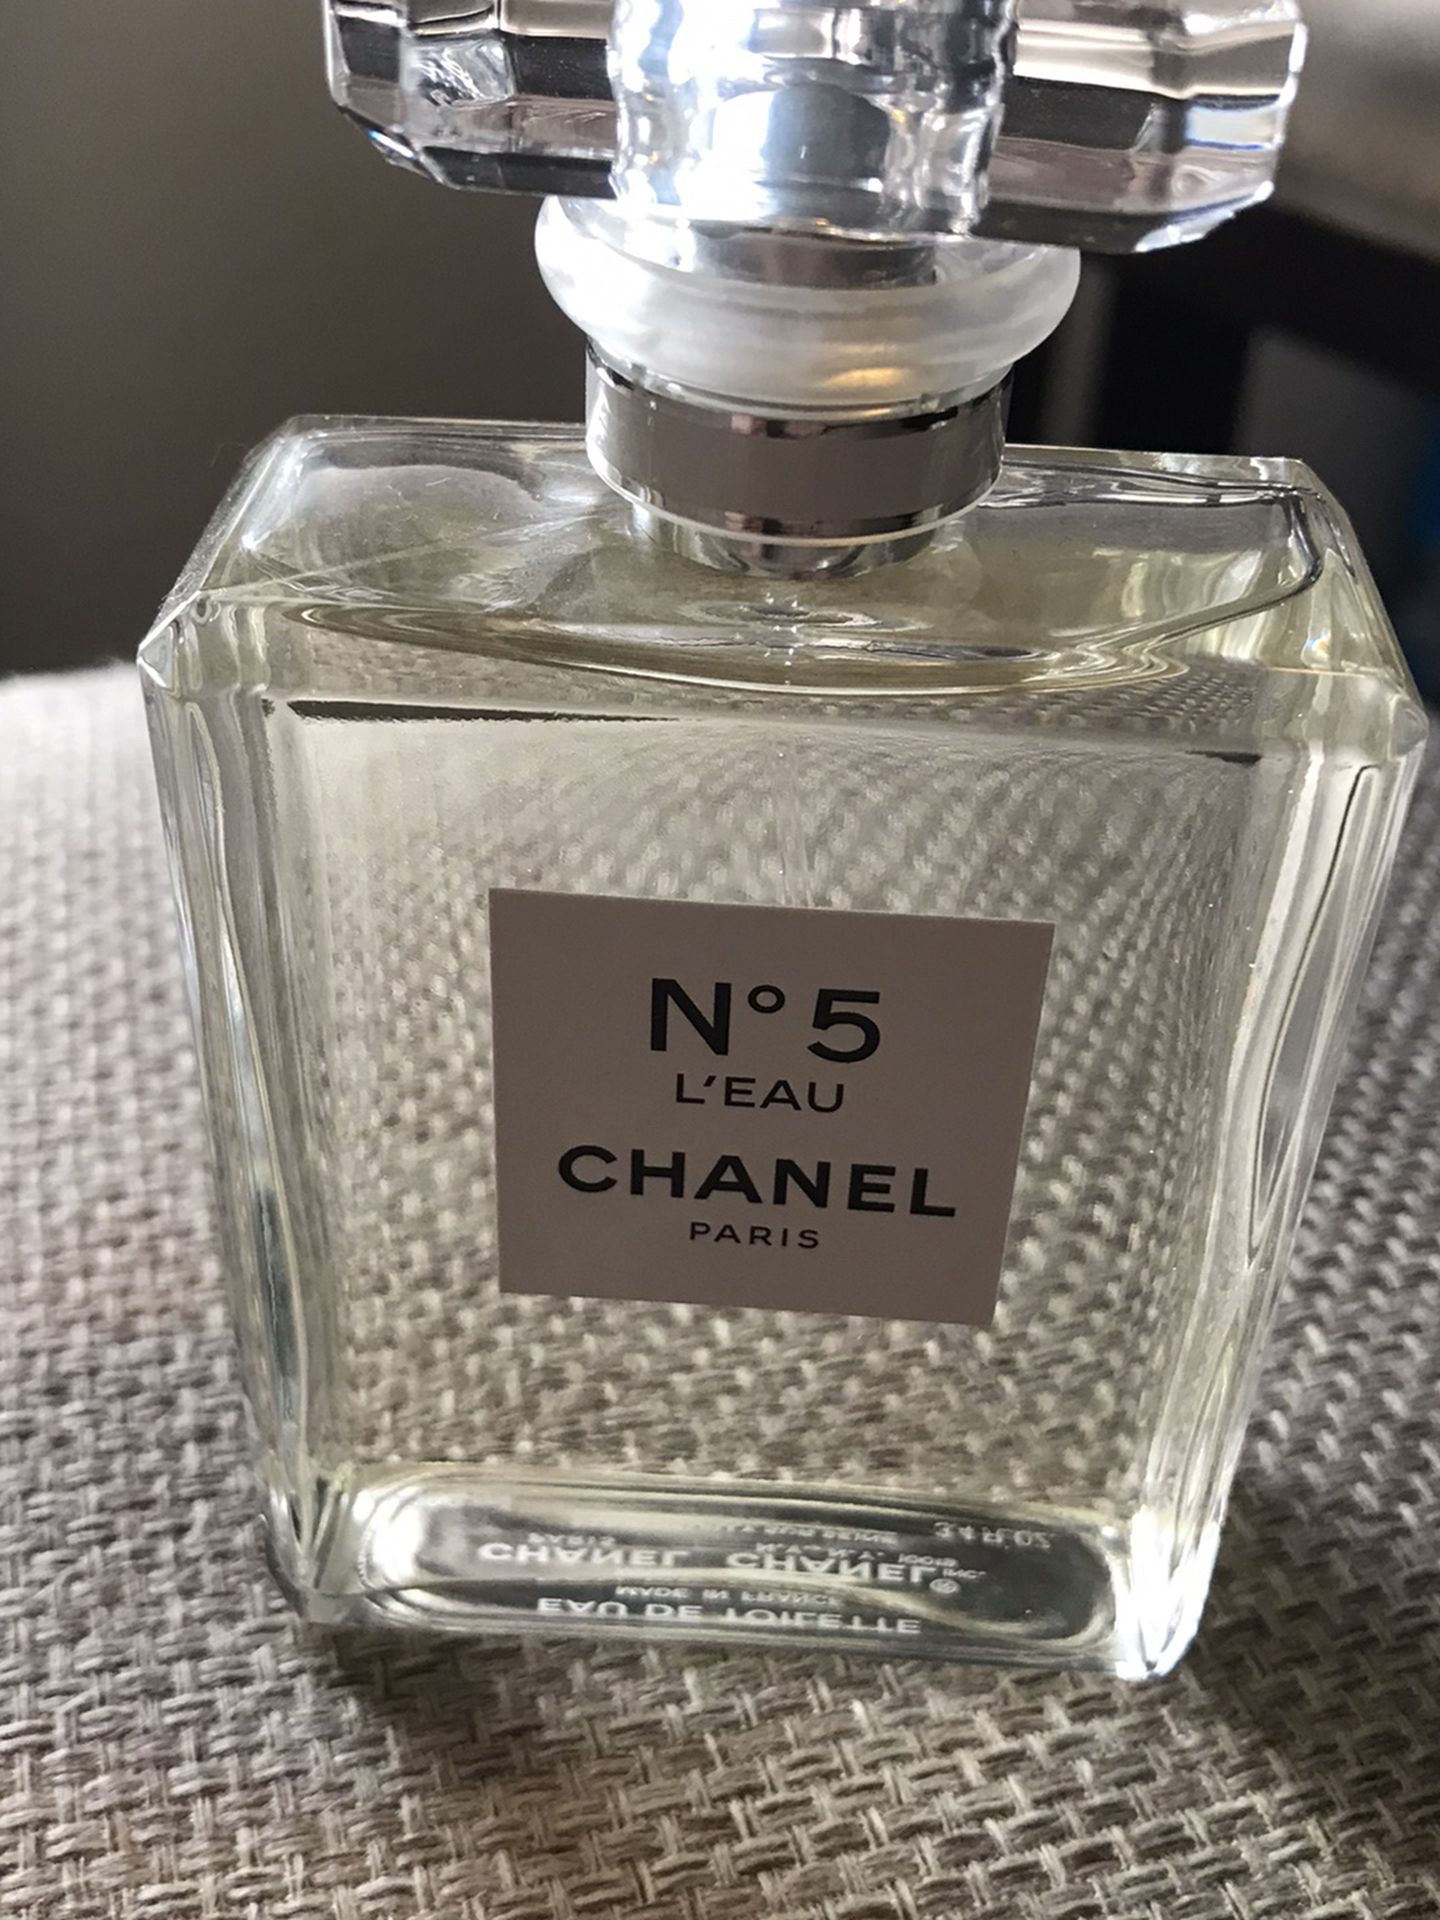 N5 Chanel Leau